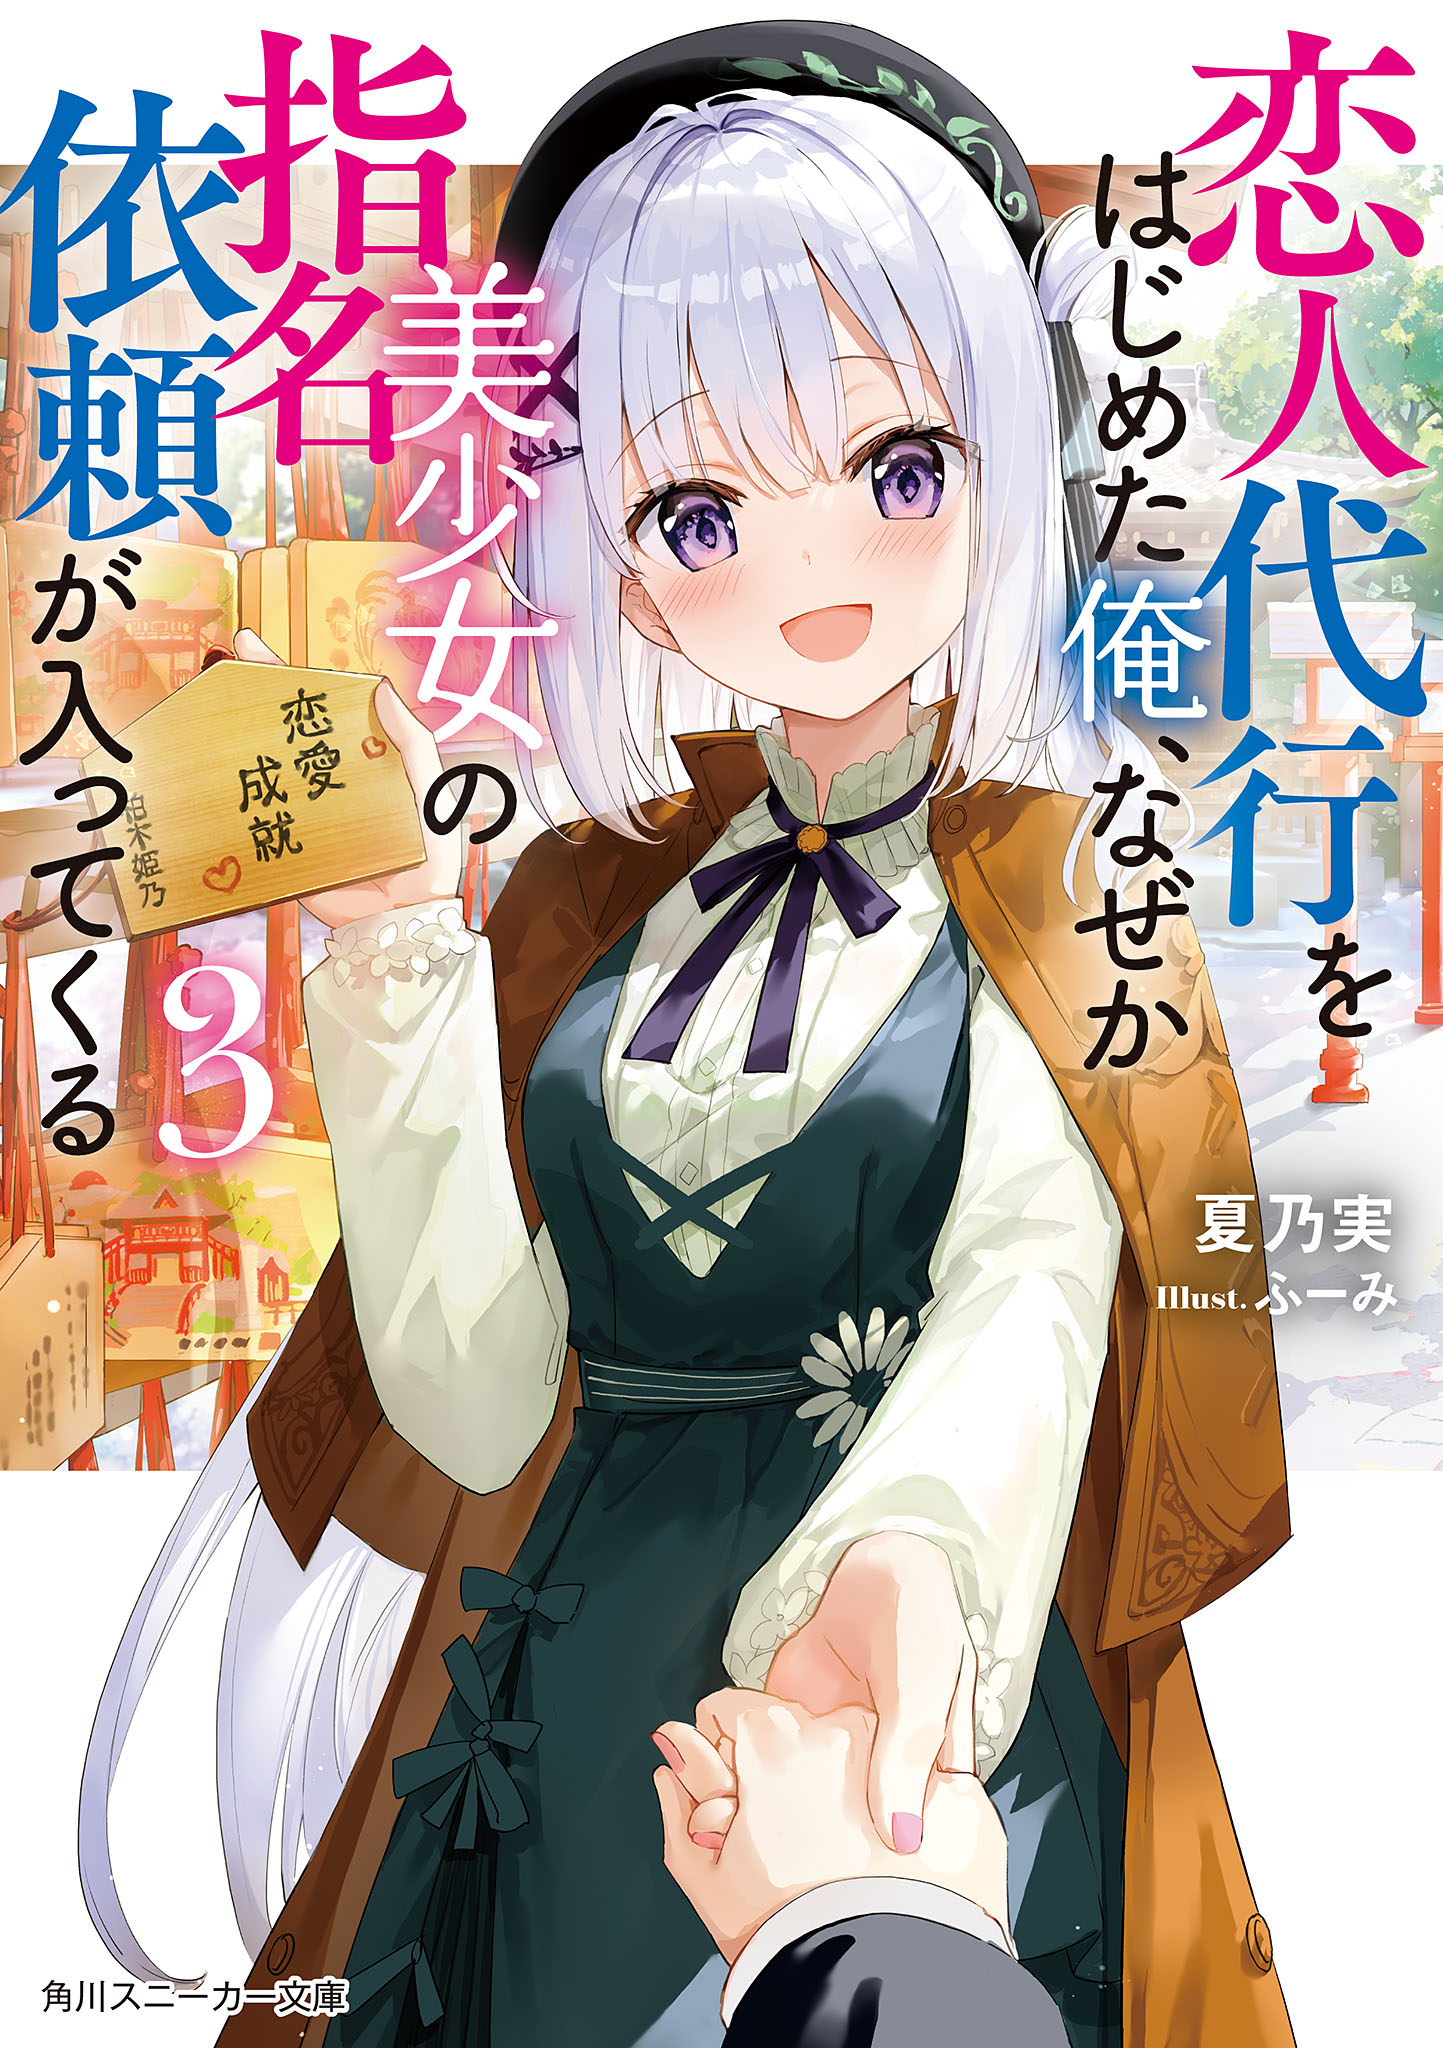 Koko wa Ore ni Makasete Saki ni Ike to Itte kara 10 Nen ga Tattara Densetsu  ni Natteita - Novel Updates